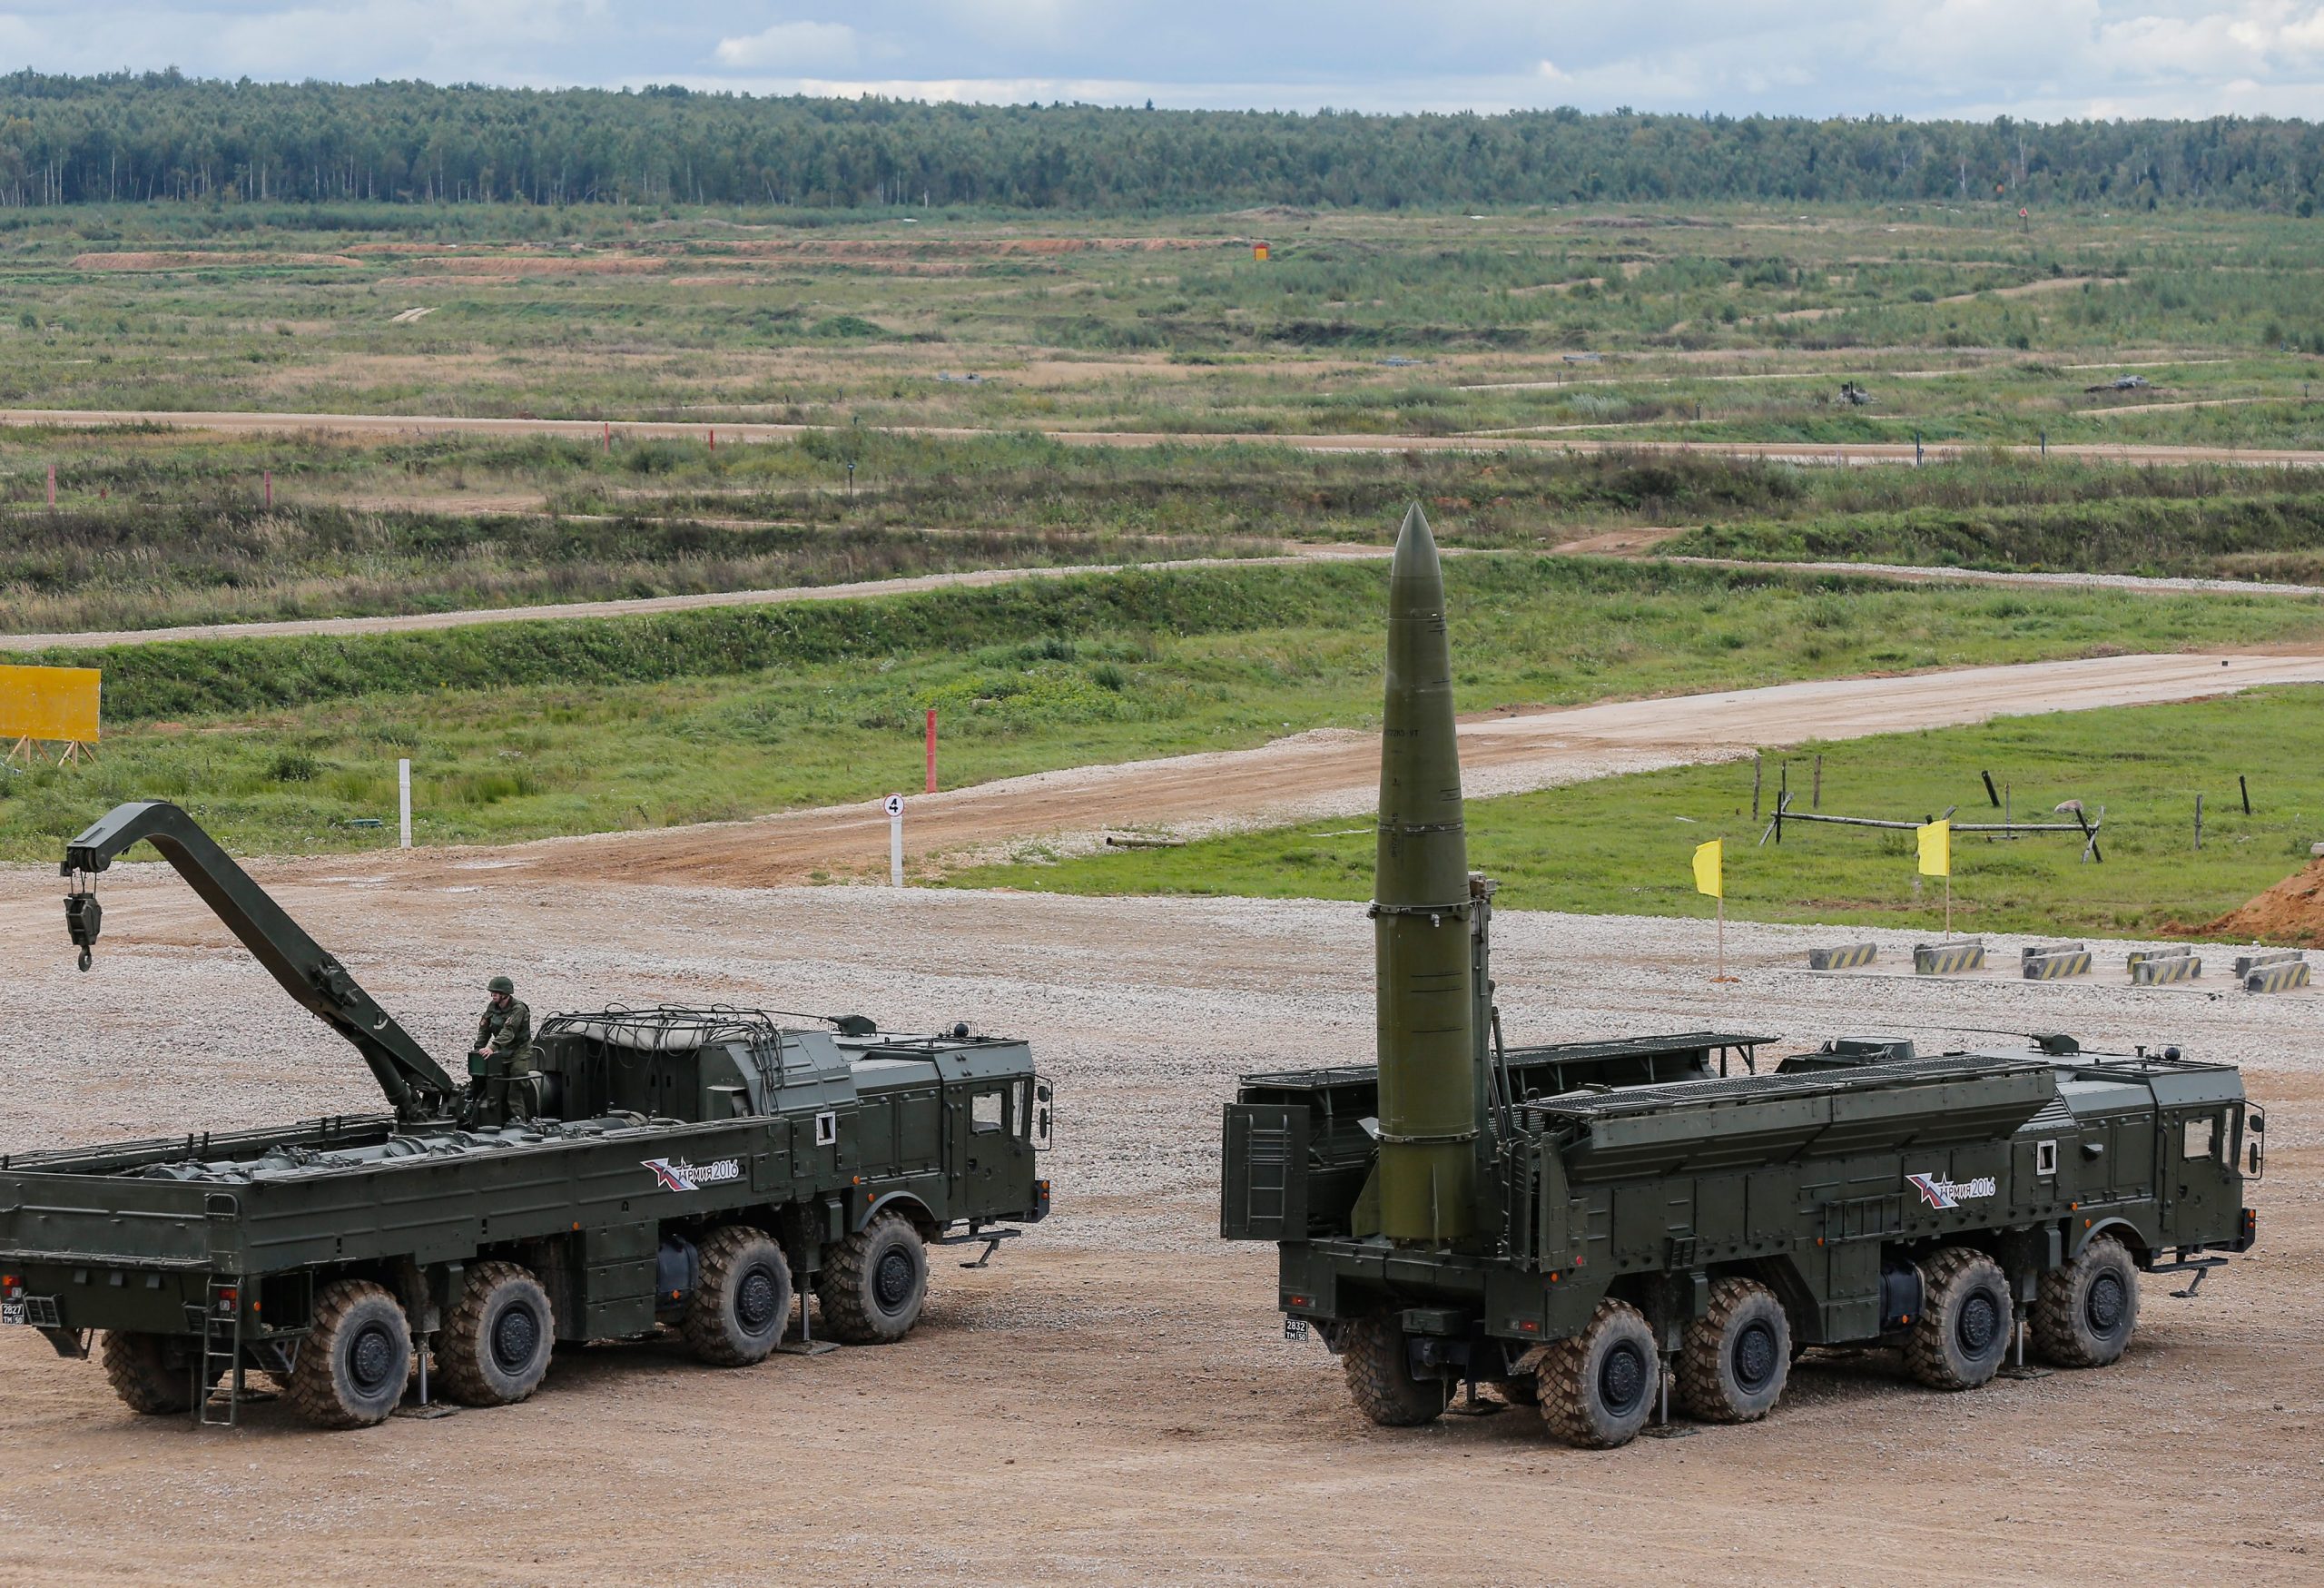 Λουκασένκο – Θέλει ρωσικούς πυραύλους Iskander με ικανότητα μεταφοράς πυρηνικών κεφαλών